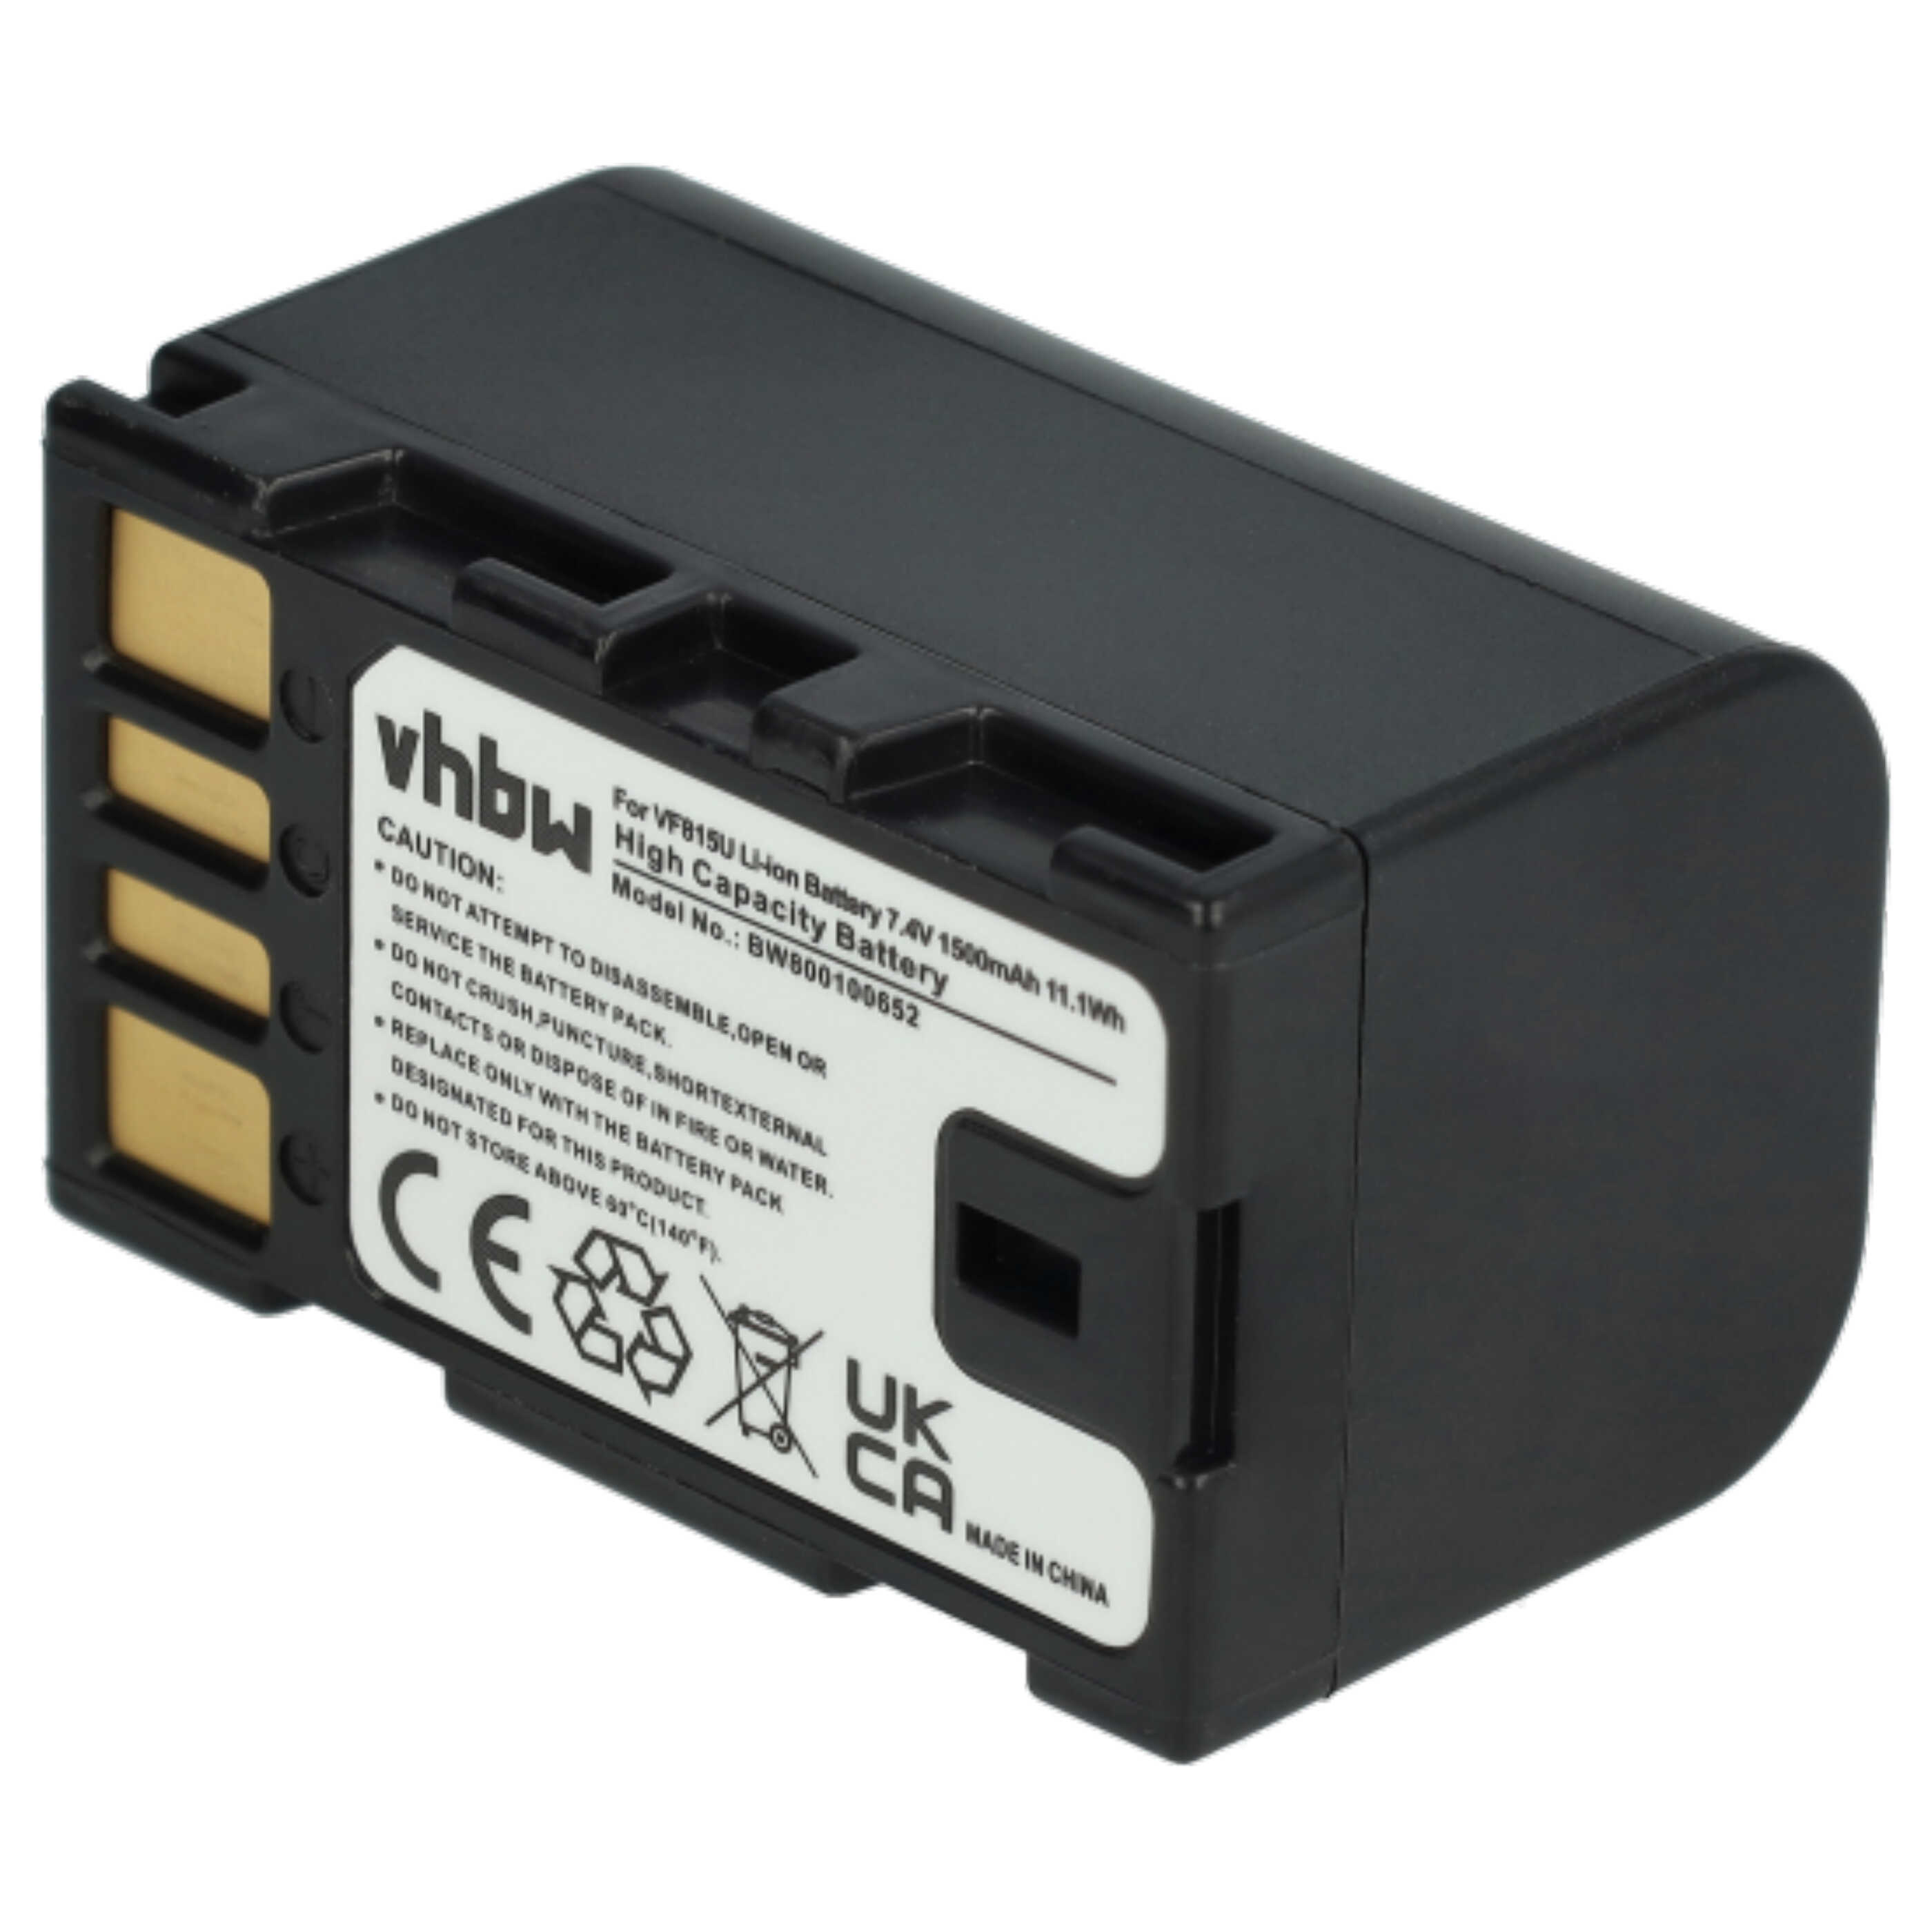 Videocamera Battery (3 Units) Replacement for JVC BN-VF815, BN-VF808, BN-VF808U - 1400 mAh 7.2 V Li-Ion